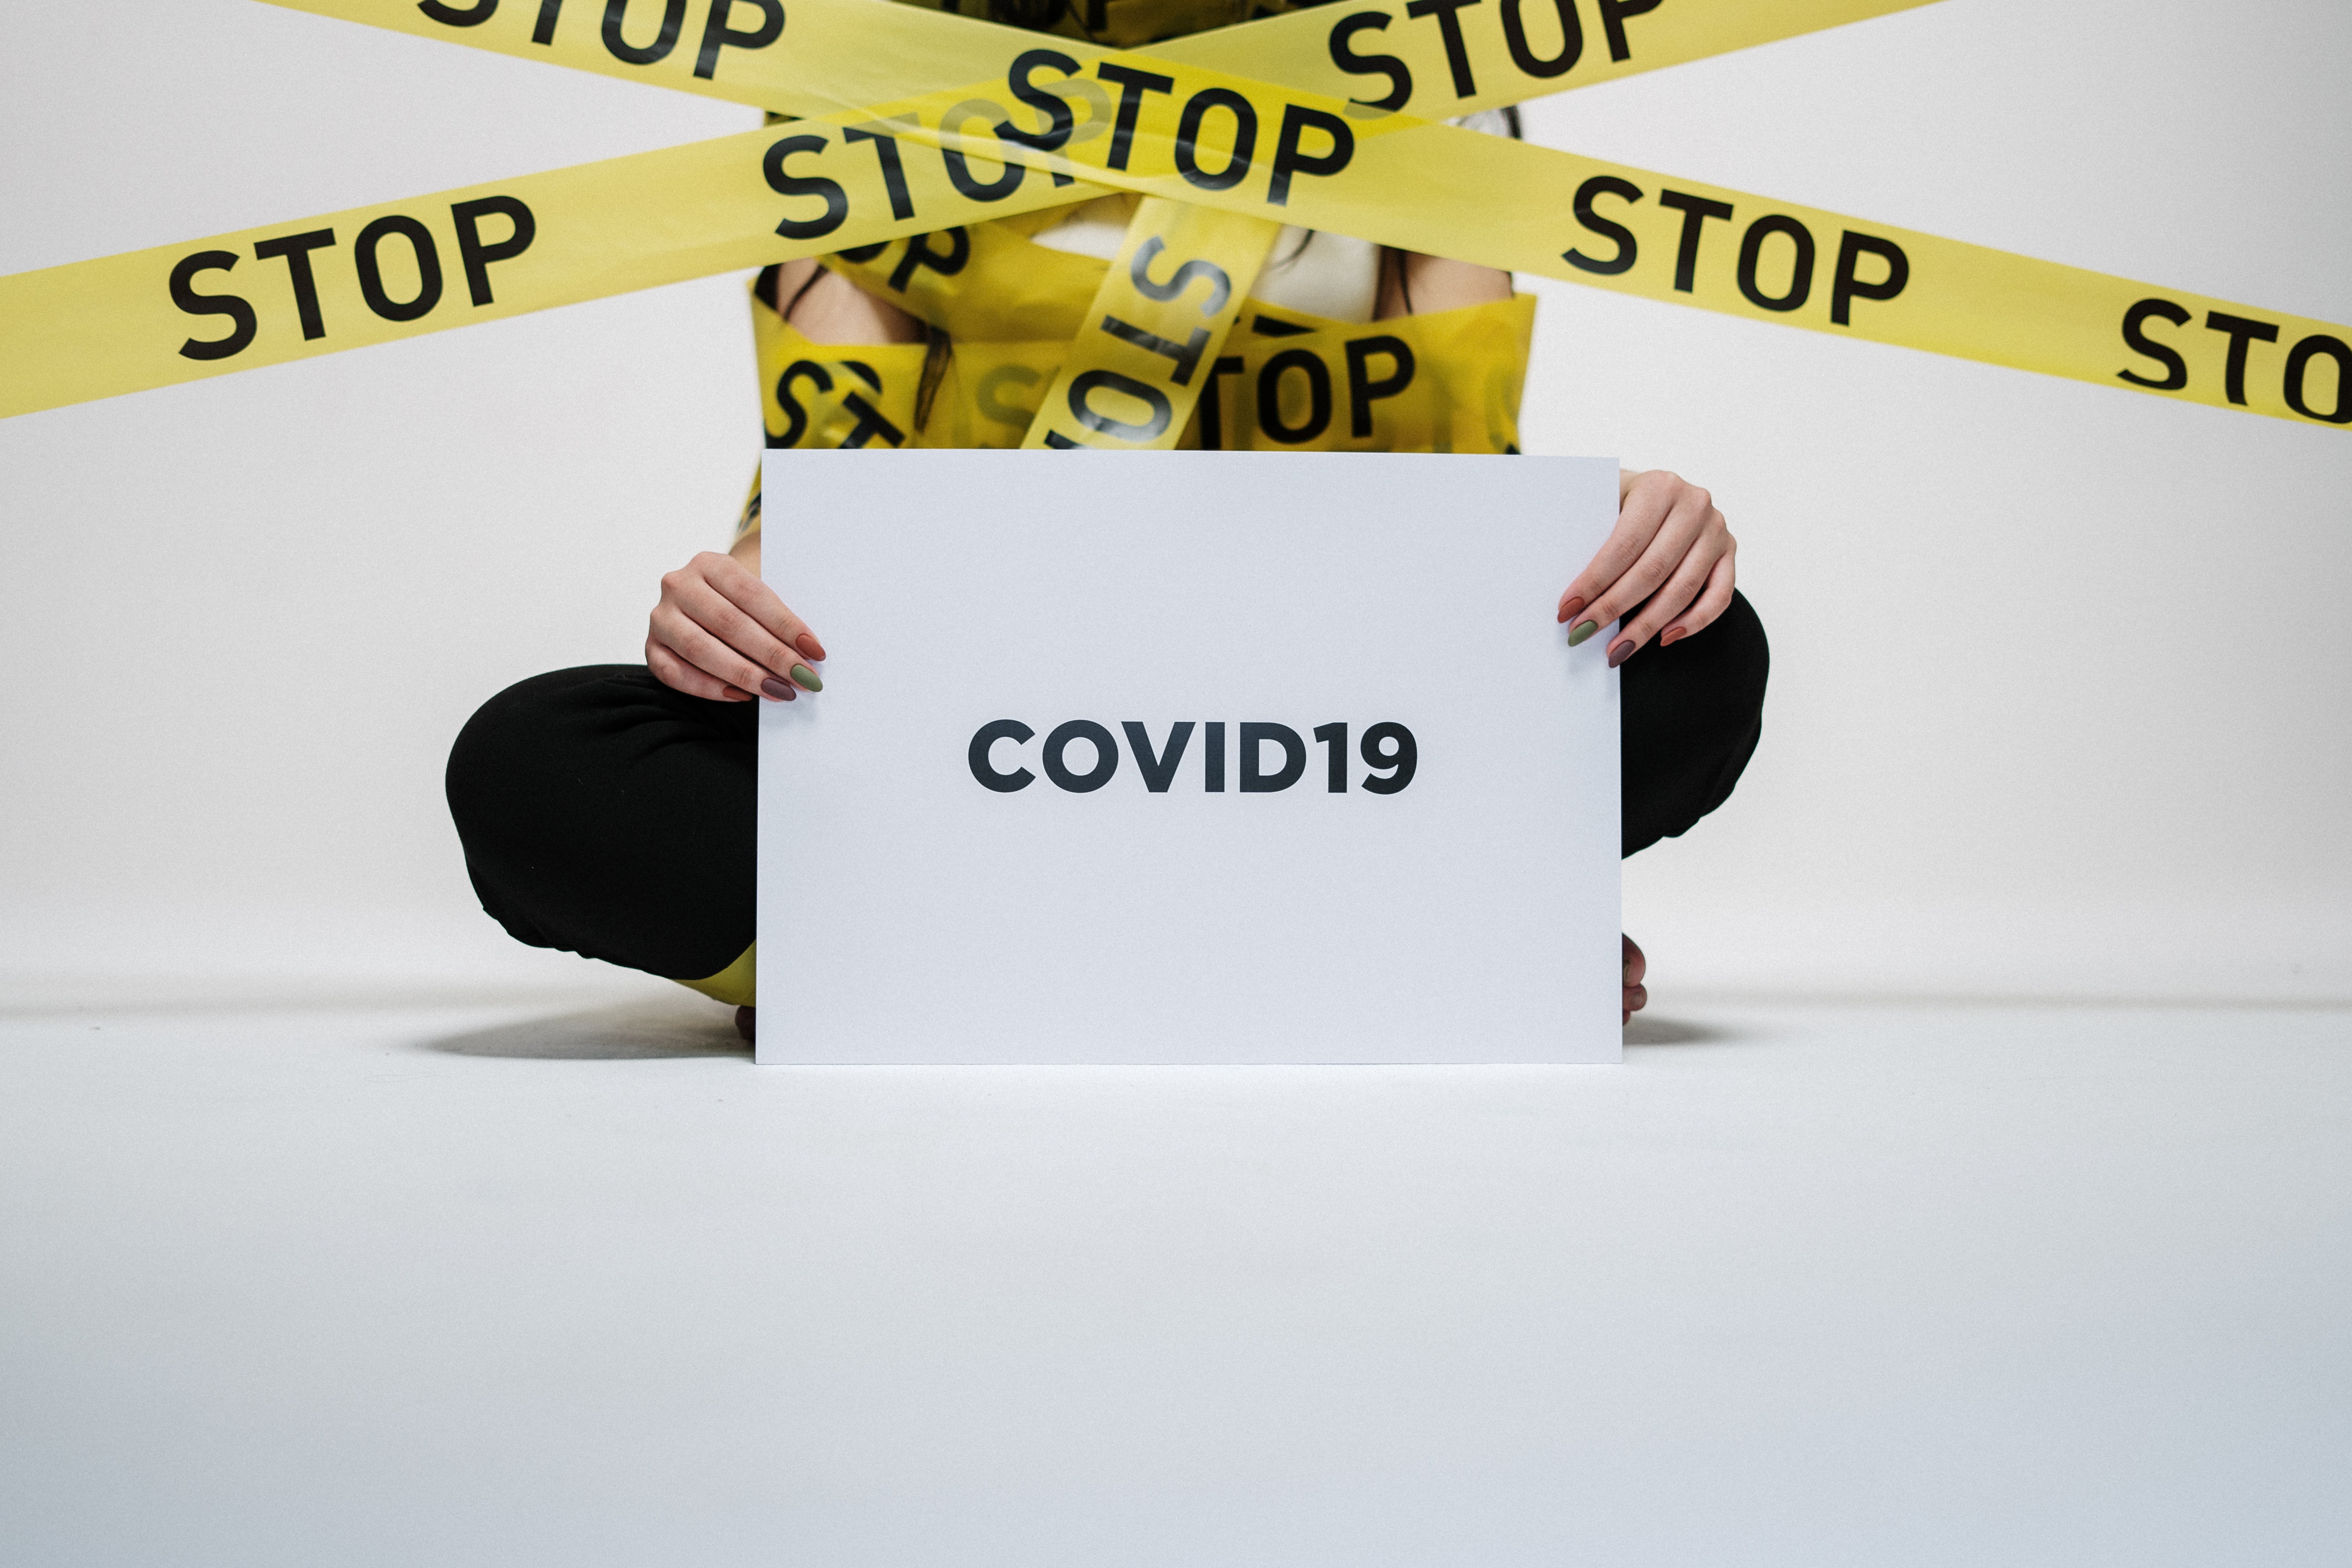 Koronavírus Covid-19: Aktuálne informácie z mesta Prievidza - 1.4.2020